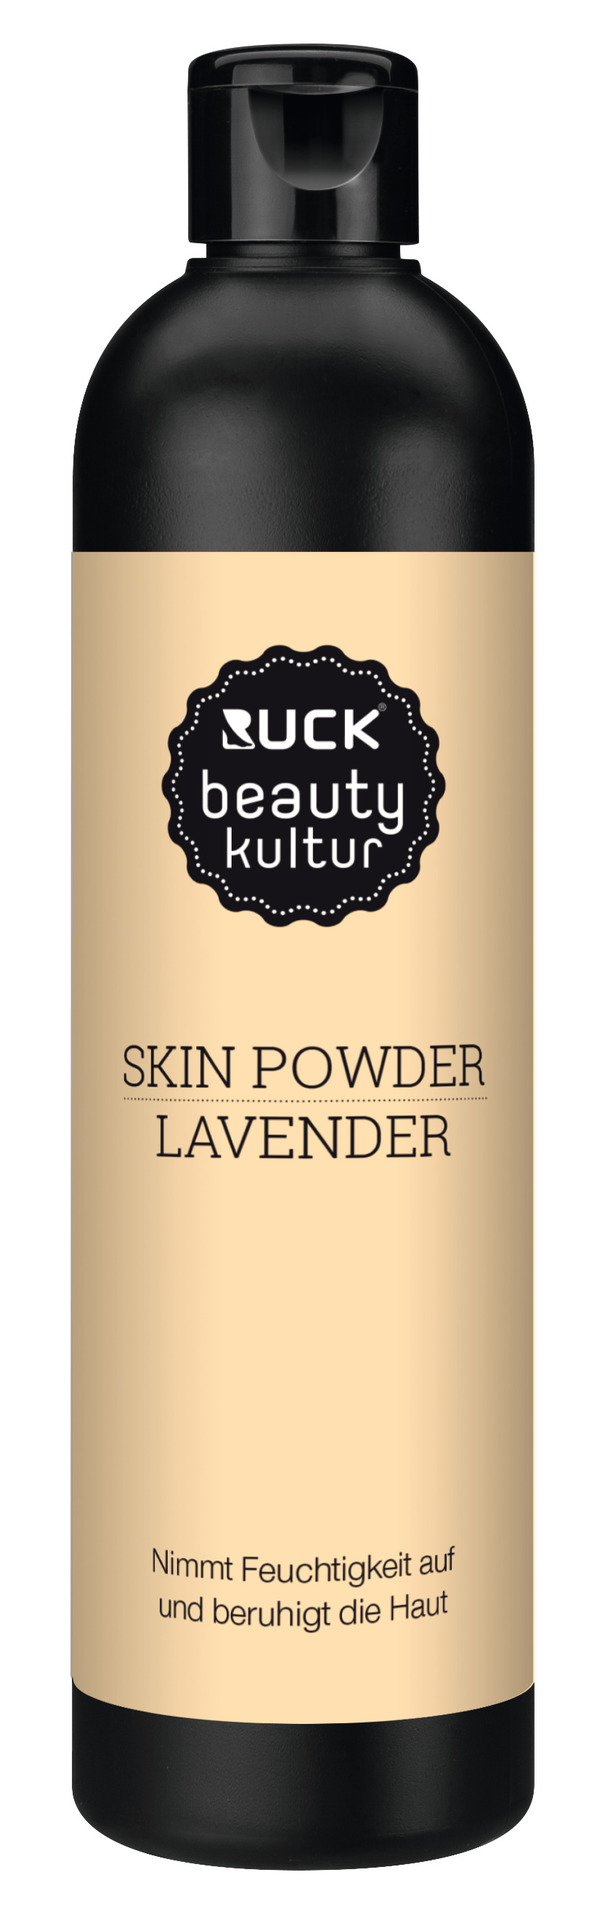 RUCK beautykultur SKIN Powder lavender | 100 g